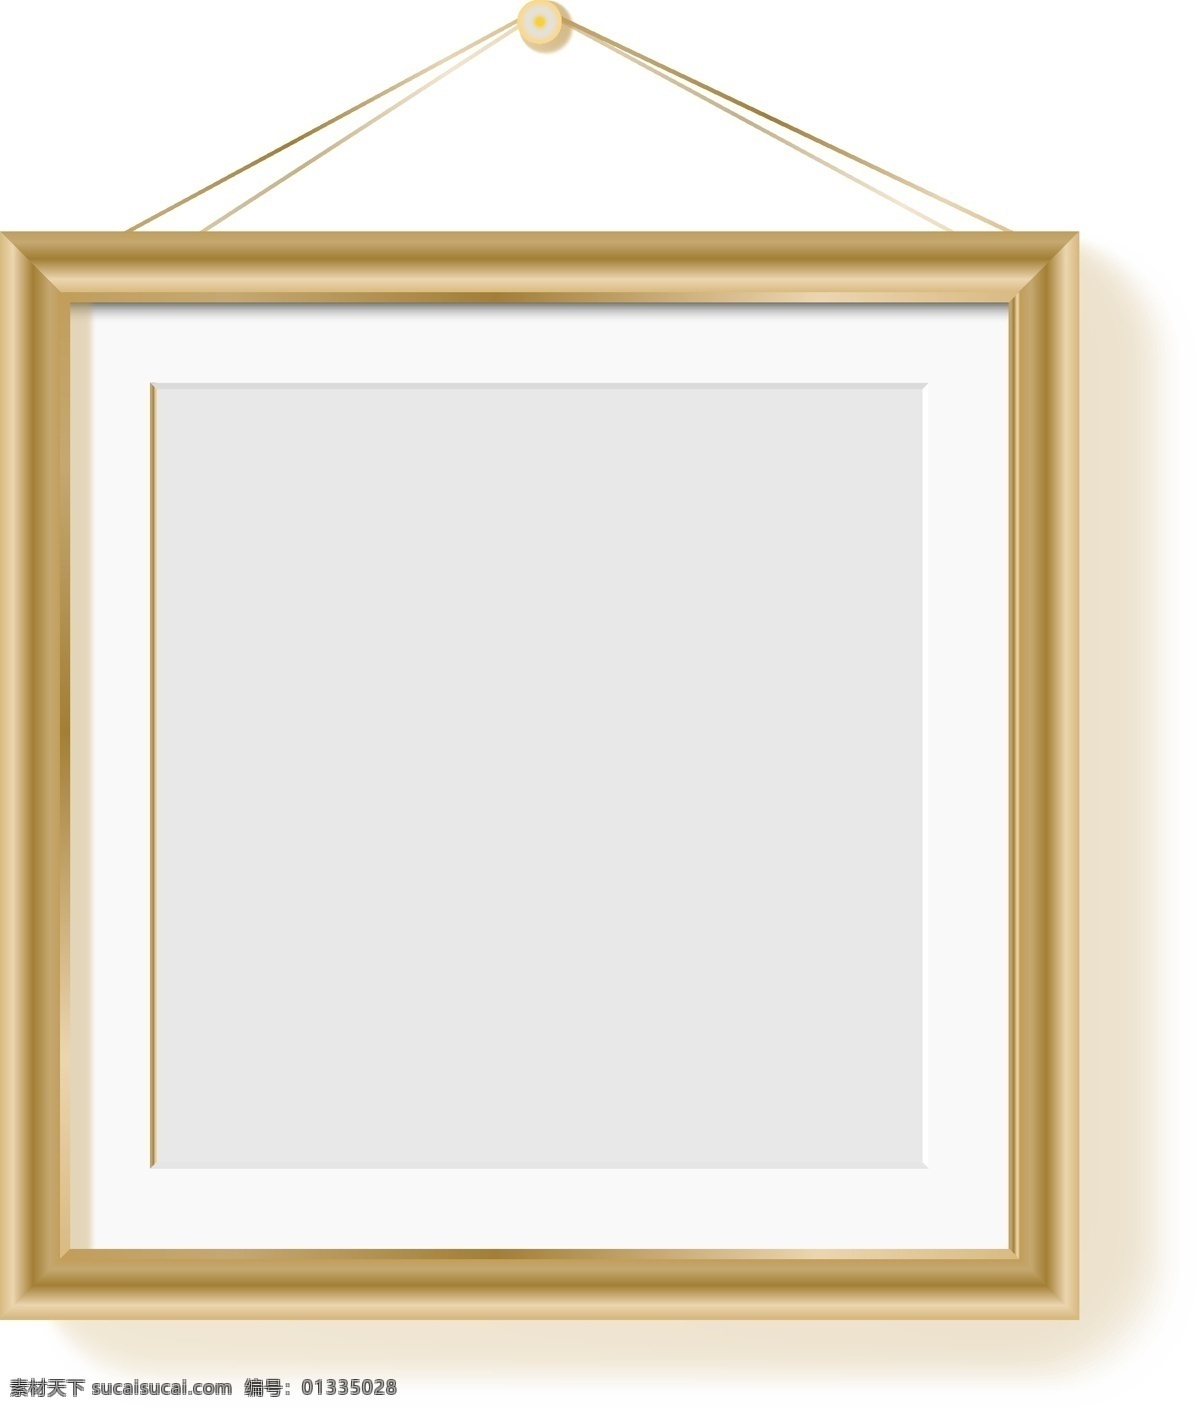 金色 质感 艺术 画框 相框 金色质感 艺术画框 字画相框 壁画相框 装饰画 木质画框 金边相框 装修画框 高档相框 挂画